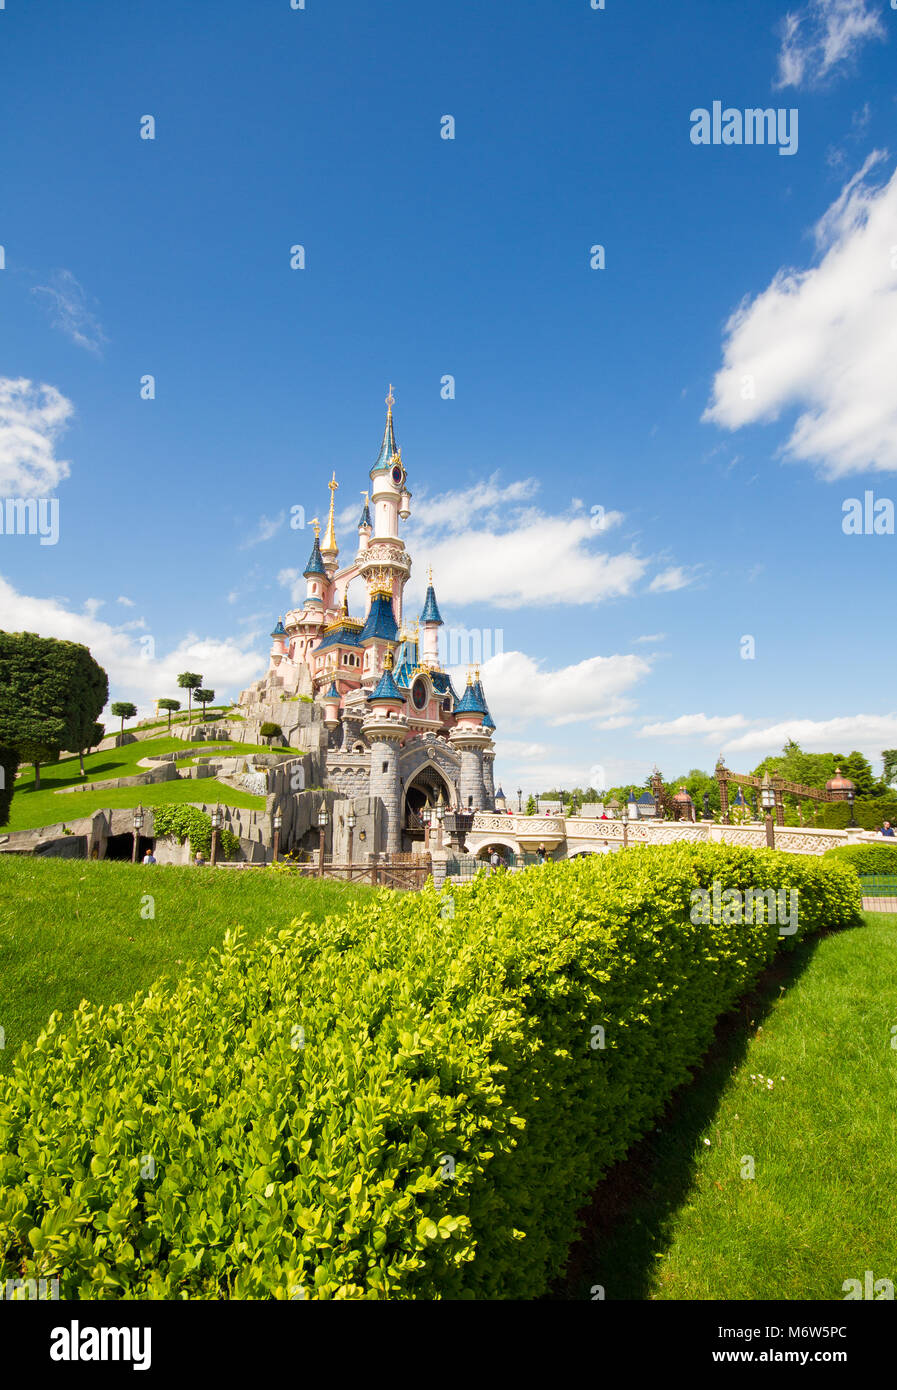 Une image colorée en orientation portrait de du Château de La Belle au bois dormant à Disneyland Paris, montrant de magnifiques jardins et de ciel bleu. Banque D'Images